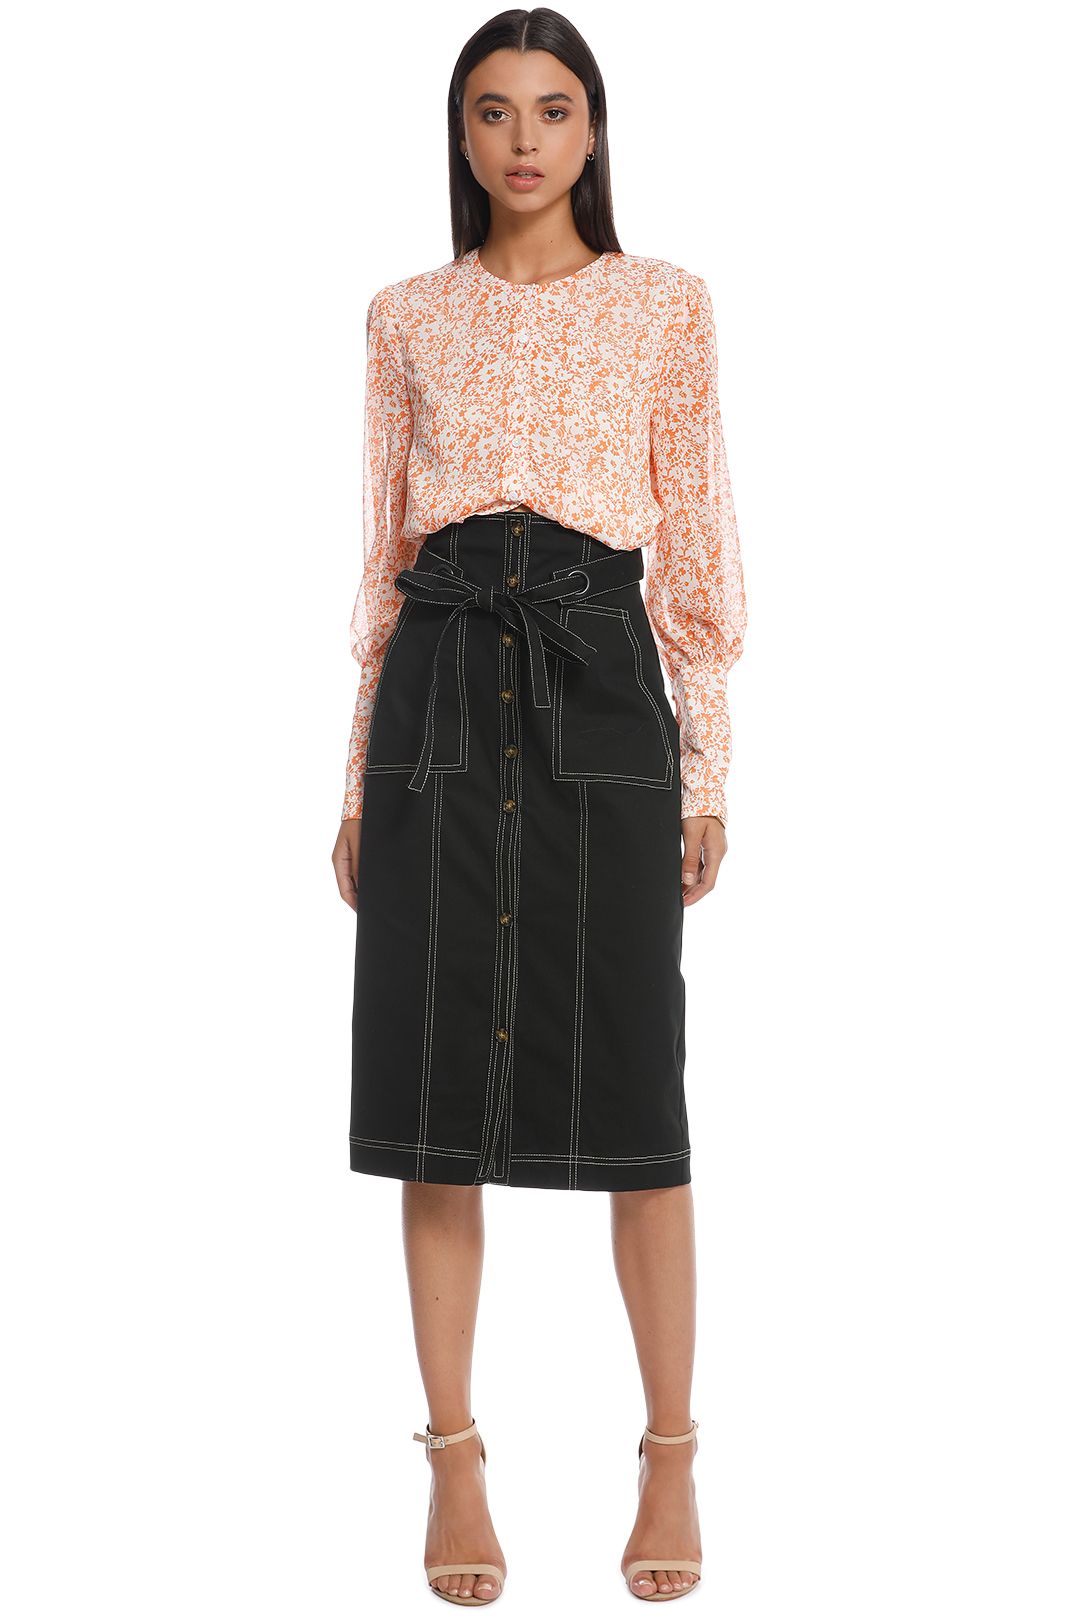 Junee Midi Skirt by The East Order for Hire | GlamCorner